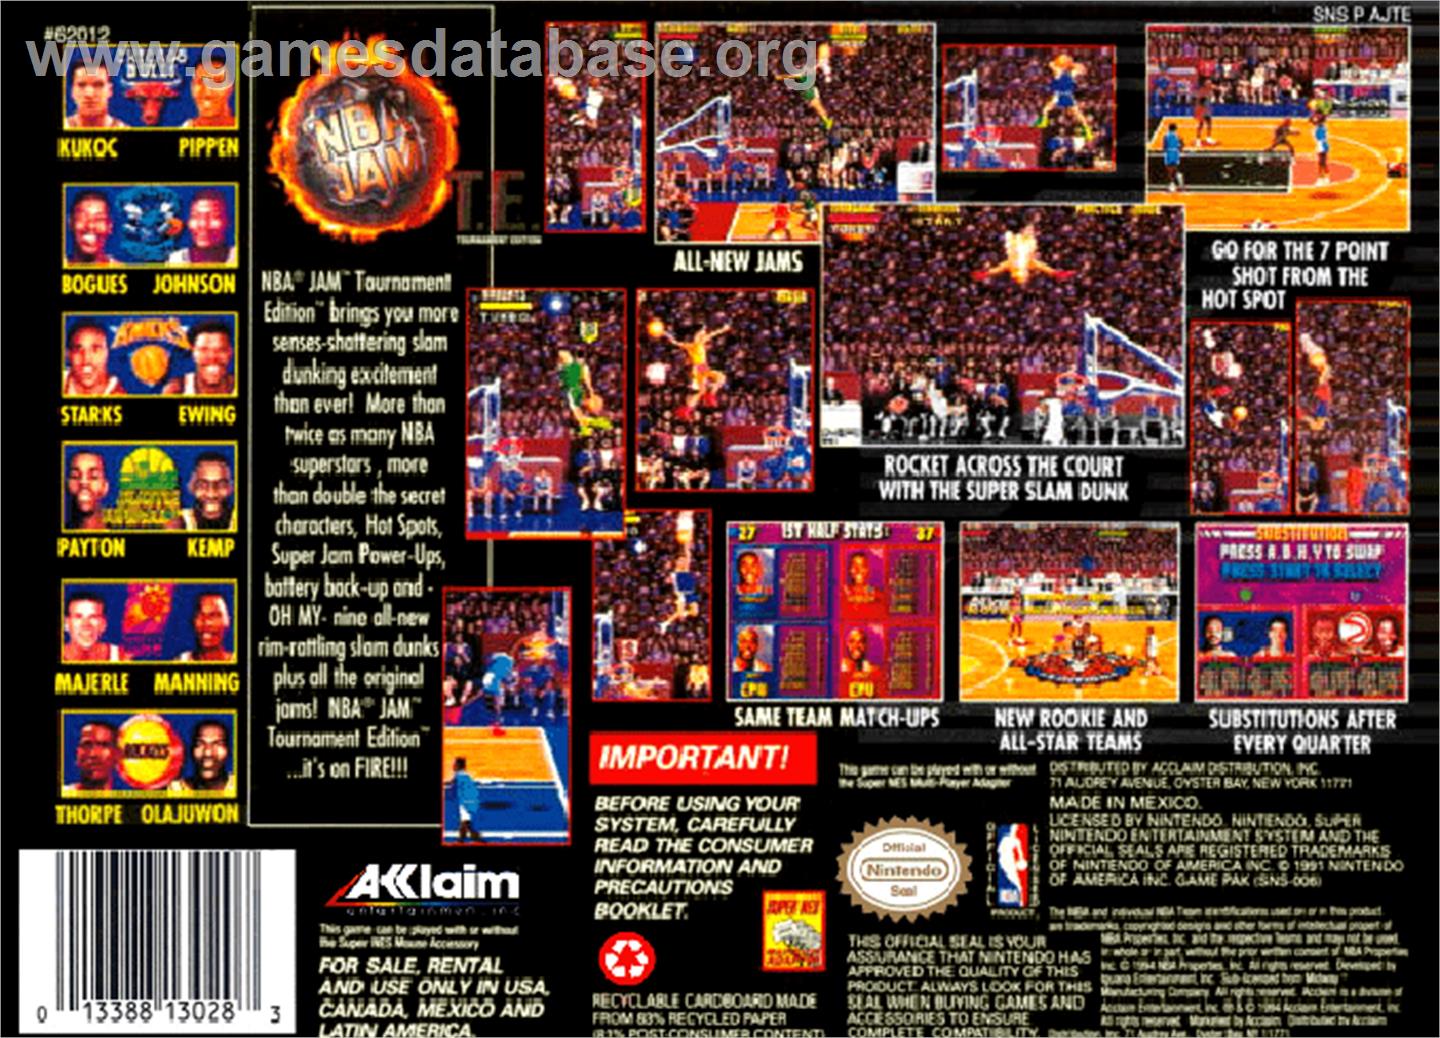 NBA Jam Tournament Edition - Nintendo SNES - Artwork - Box Back